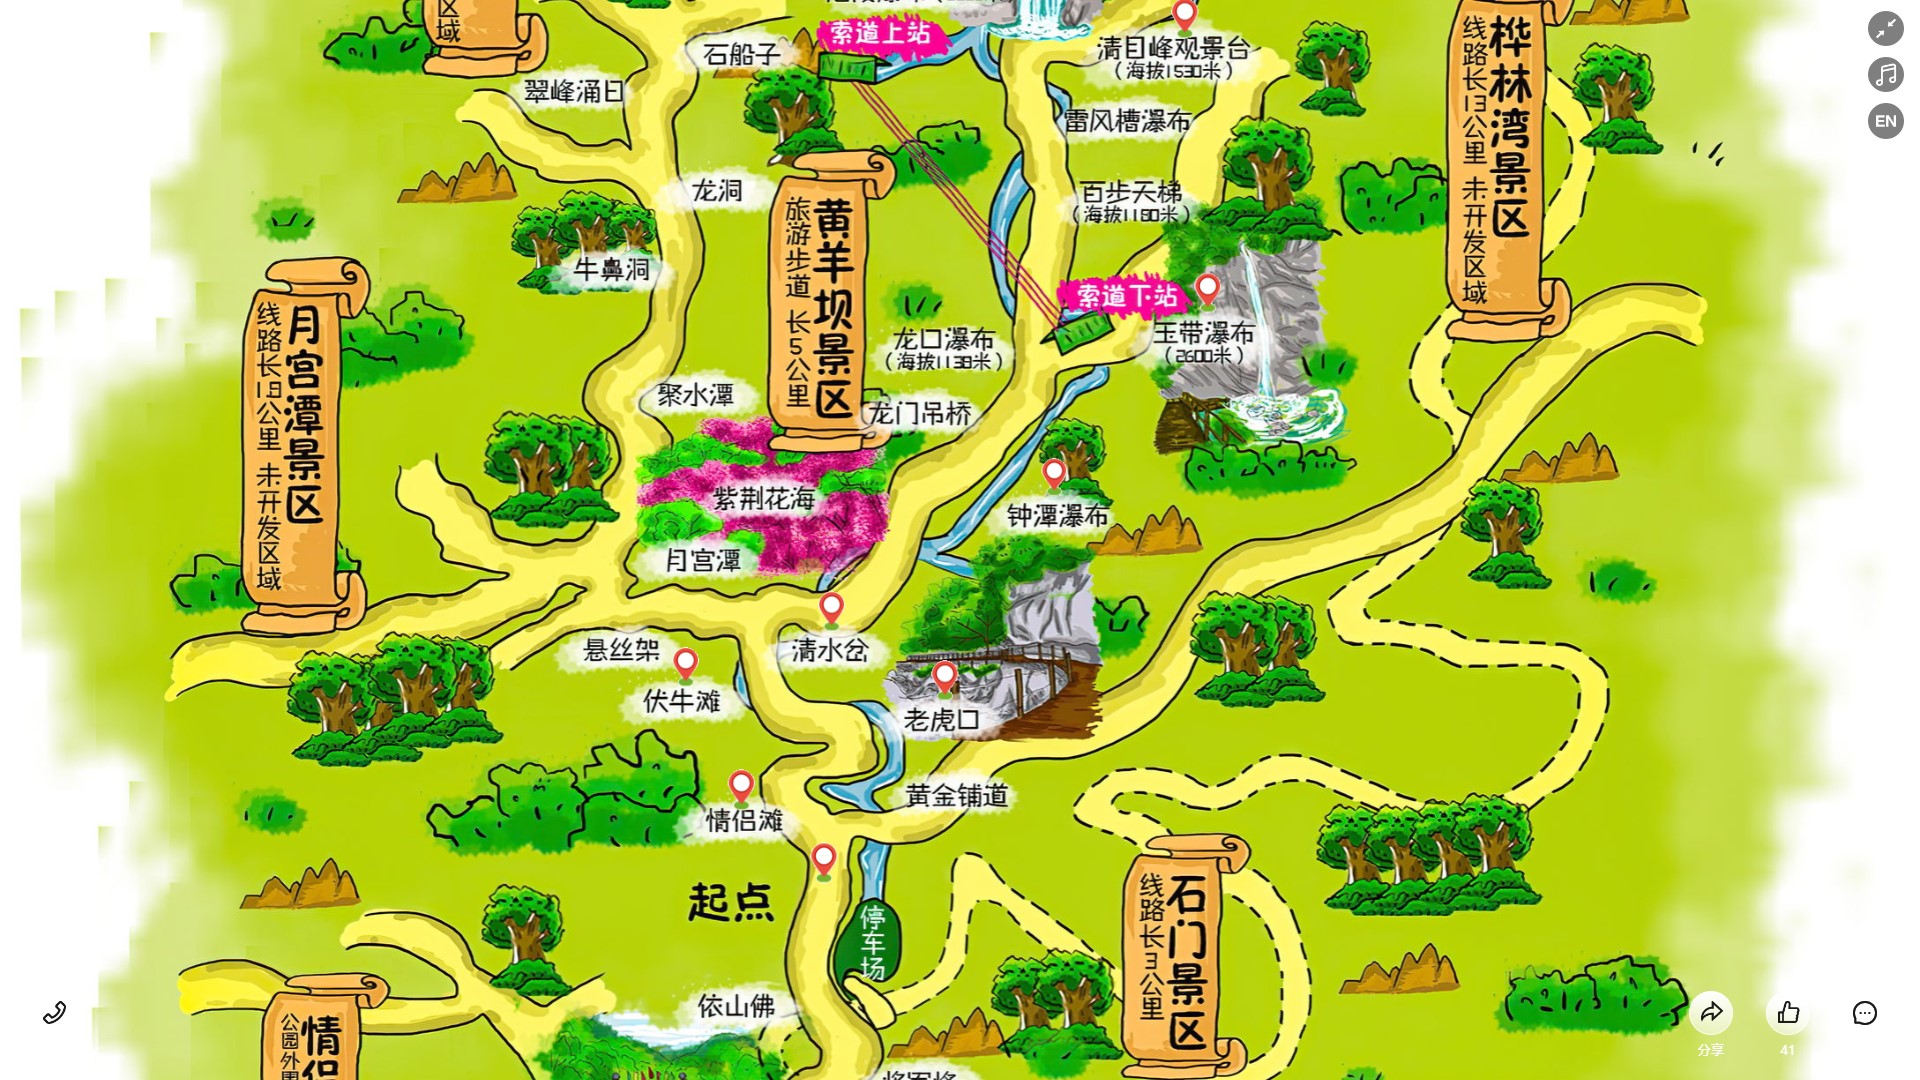 枫木镇景区导览系统